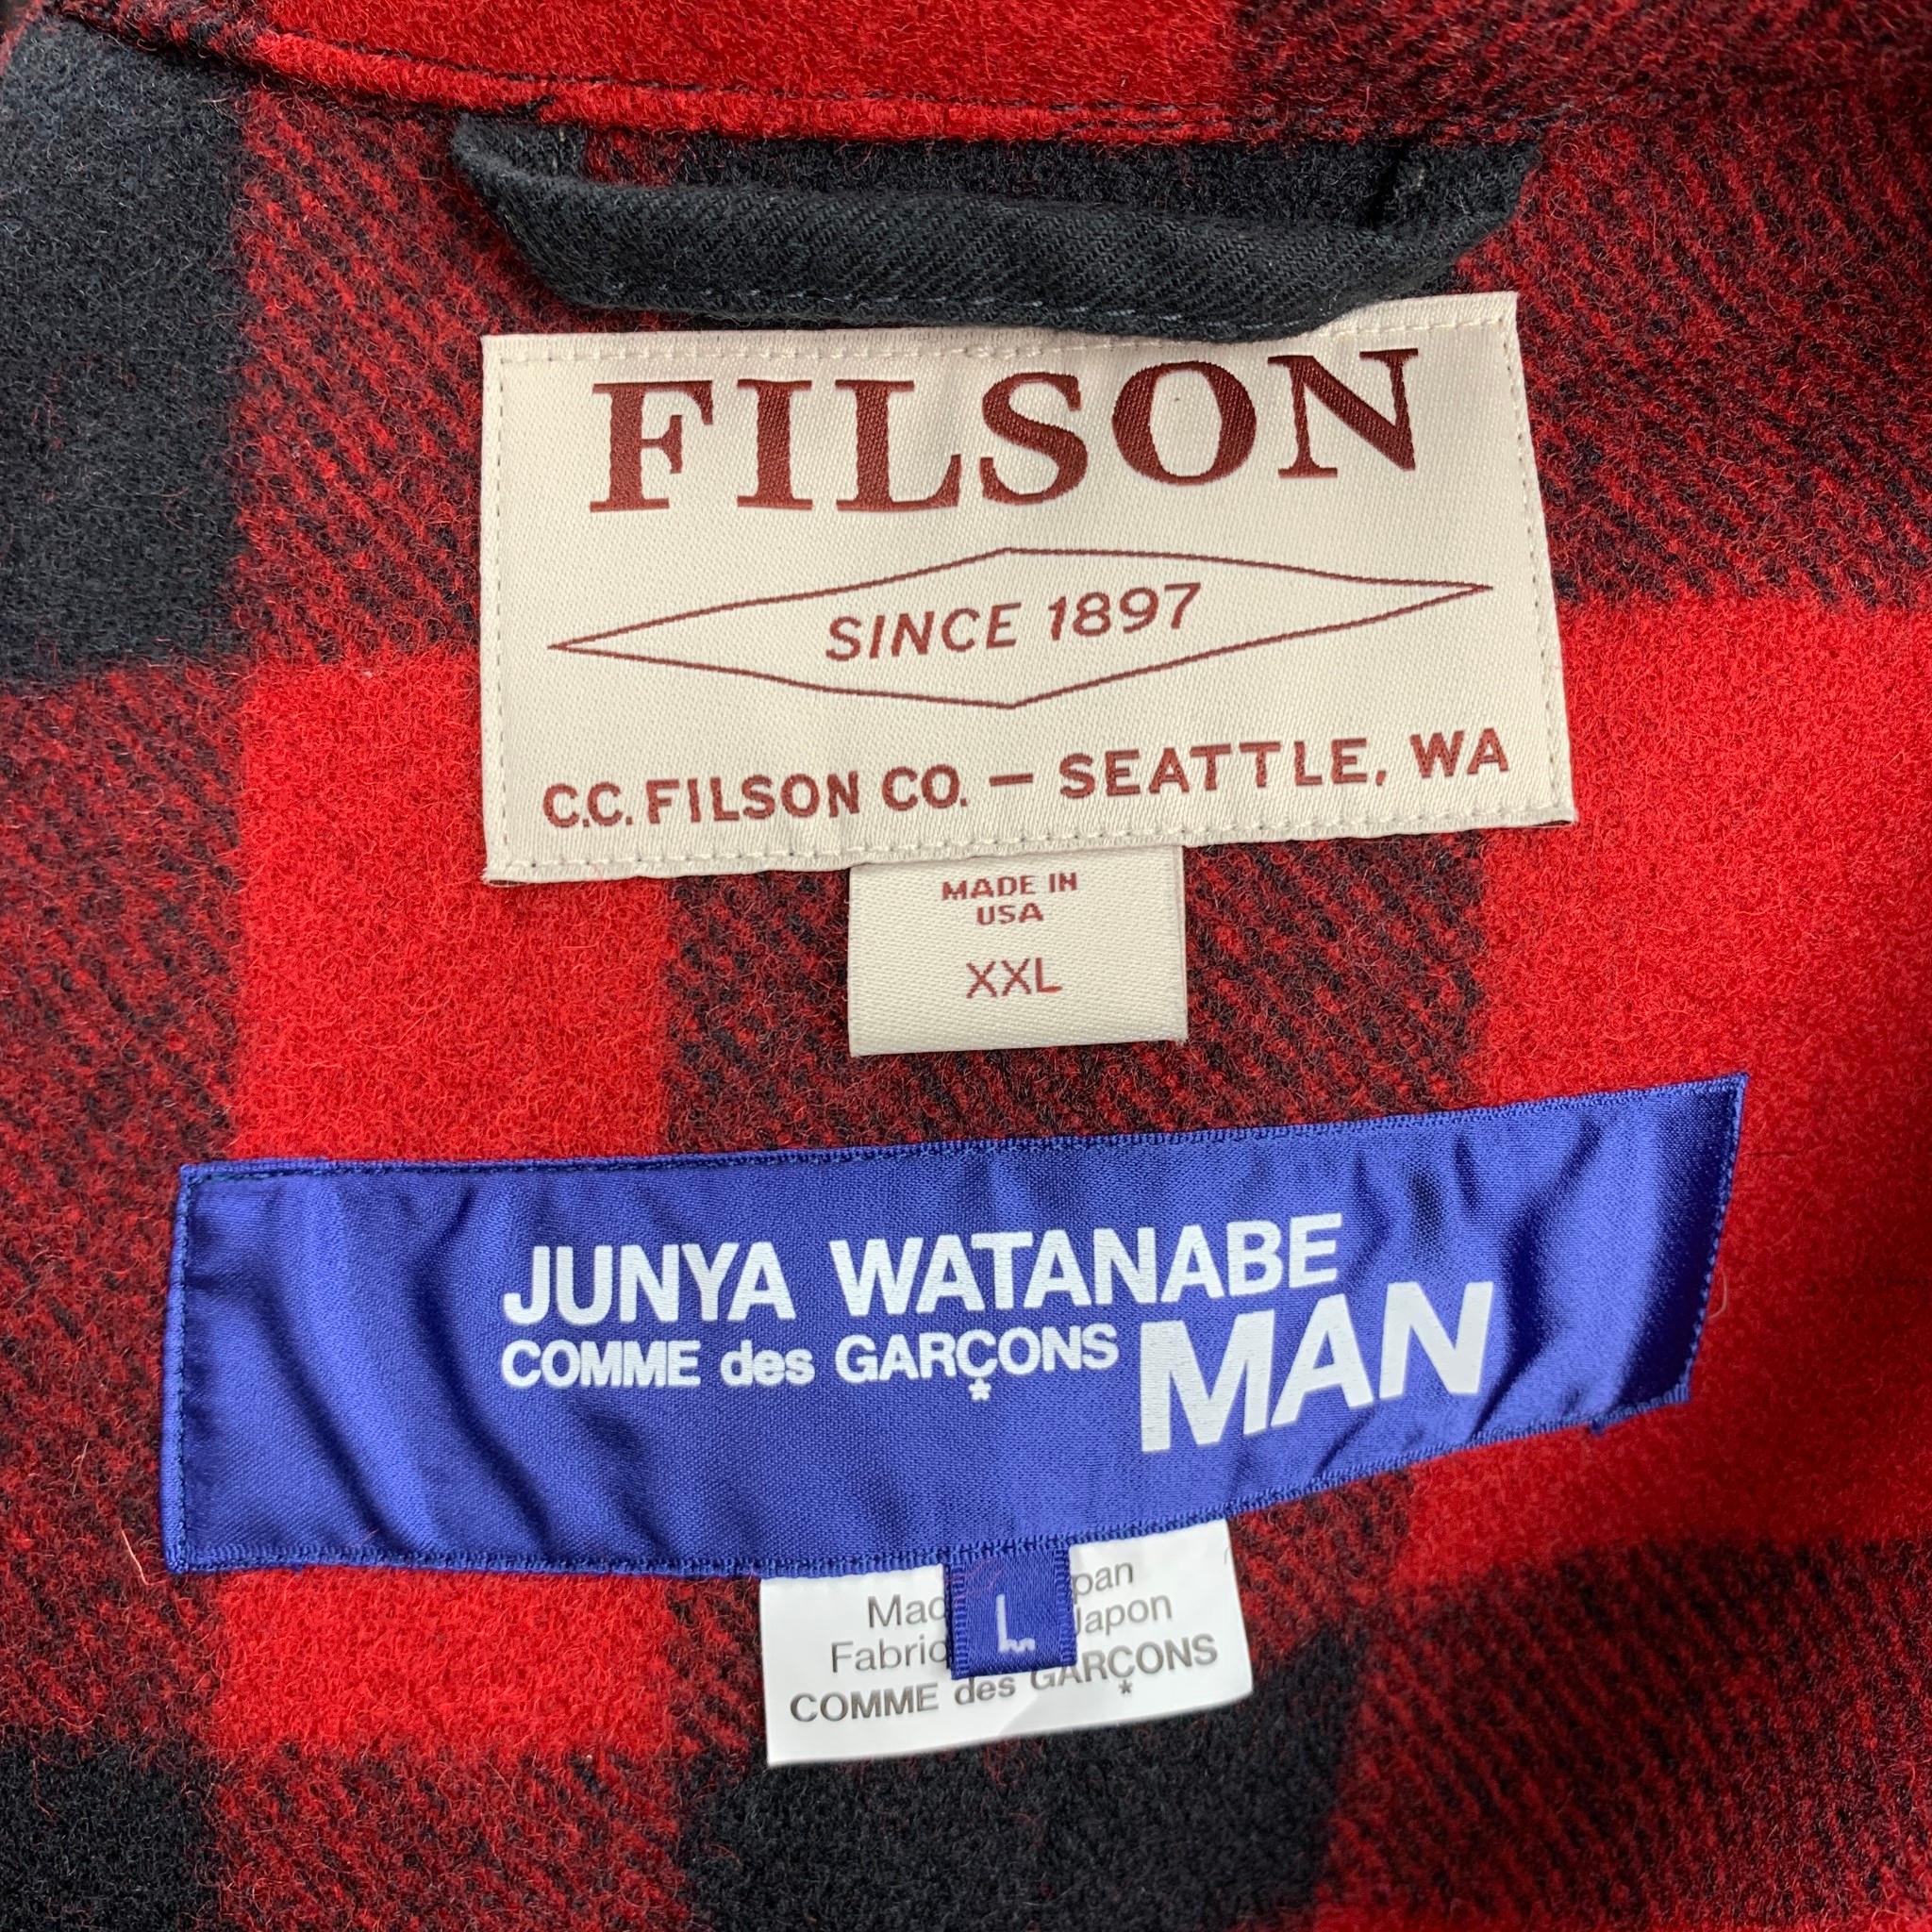 JUNYA WATANABE x FILSON Size XXL Red & Black Buffalo Plaid Wool Jacket 1